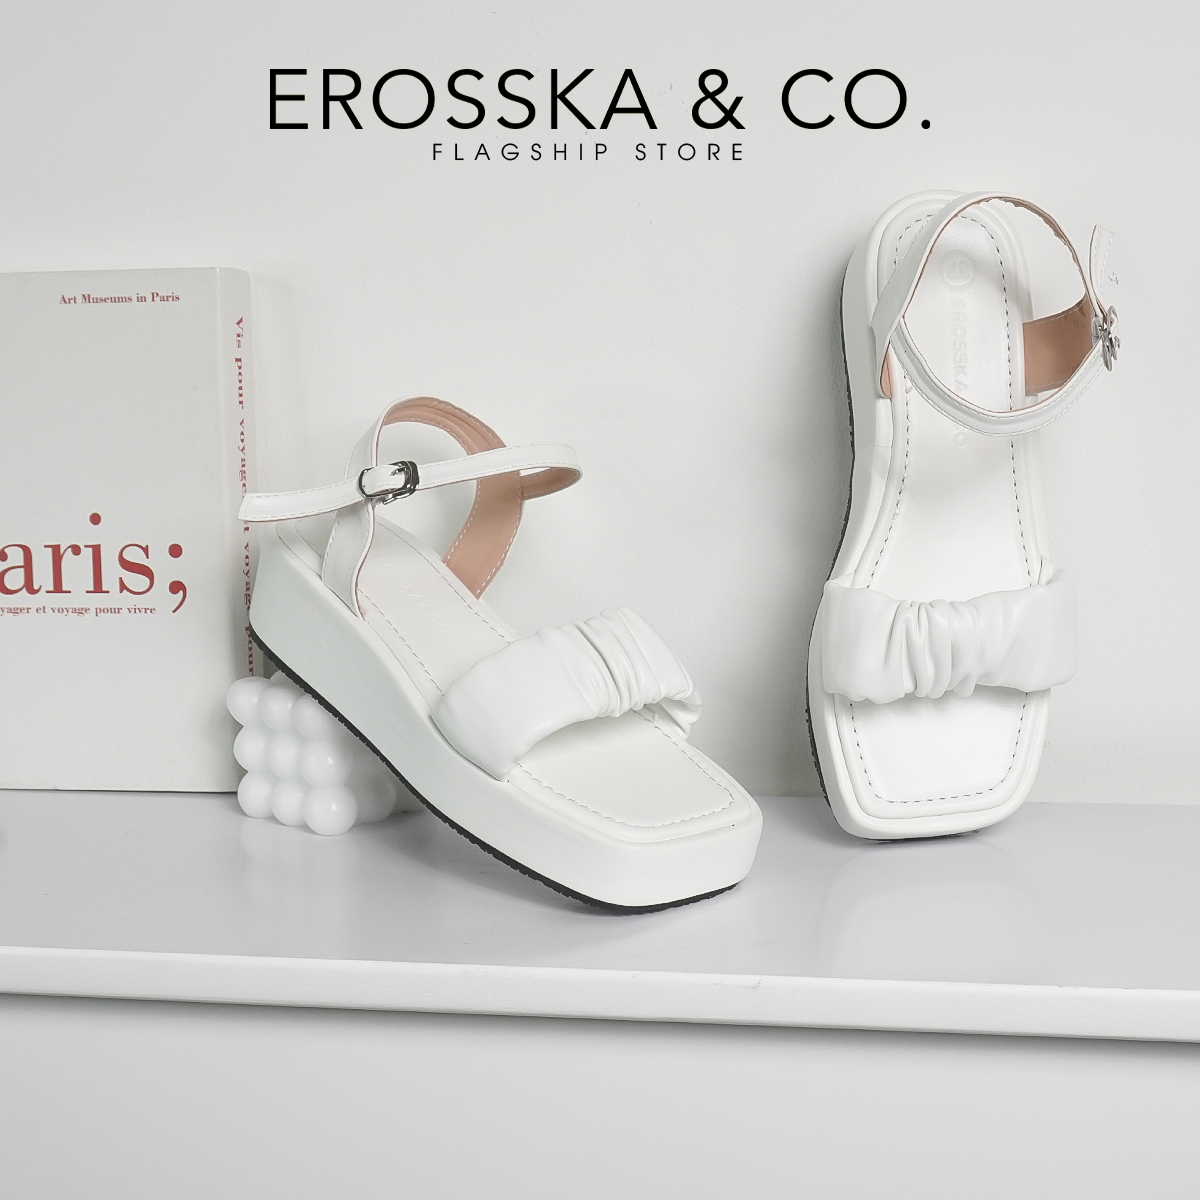 Erosska - Giày Sandal nữ đế xuồng quai nhún da mềm thoải mái cao 3cm màu kem - SB018